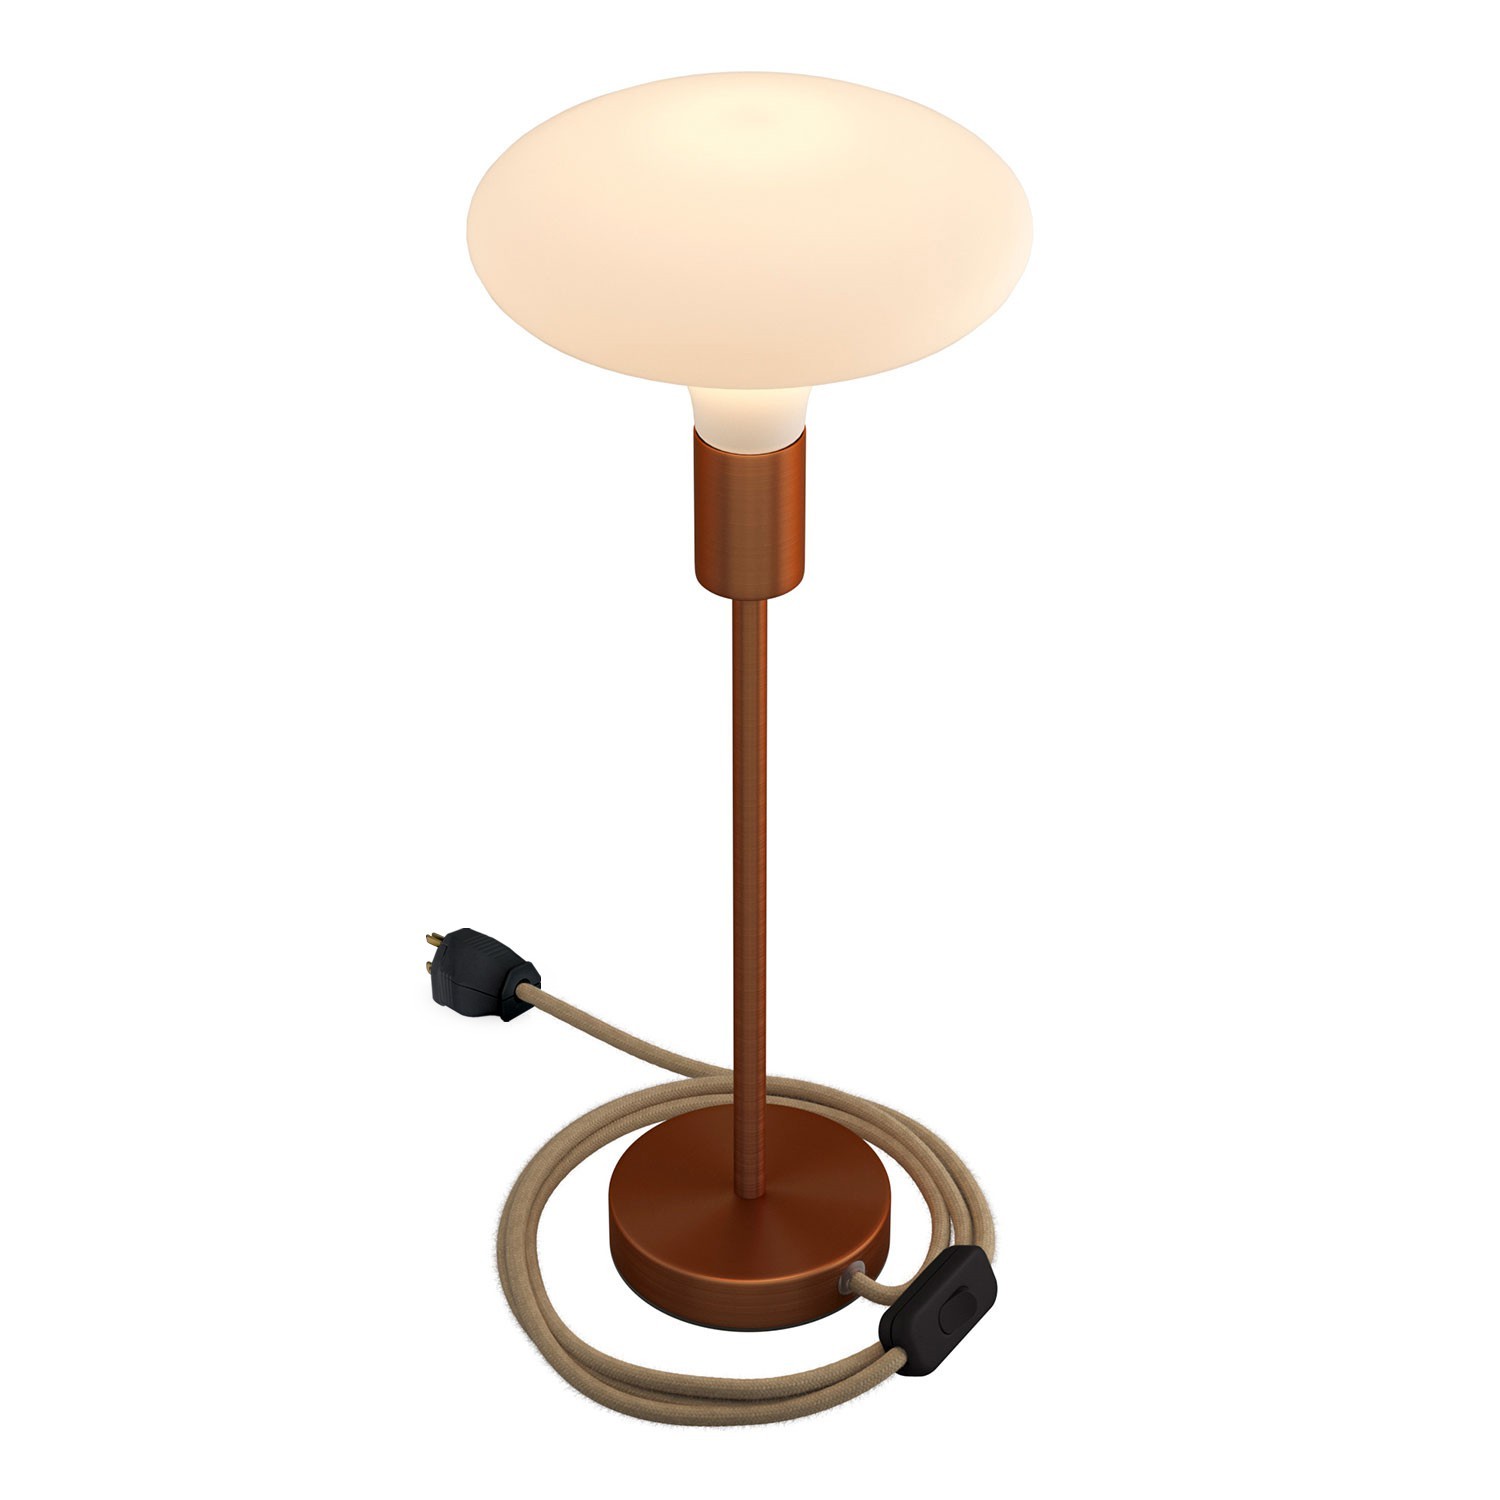 Alzaluce - Lámpara de mesa en metal con cable, interruptor y clavija